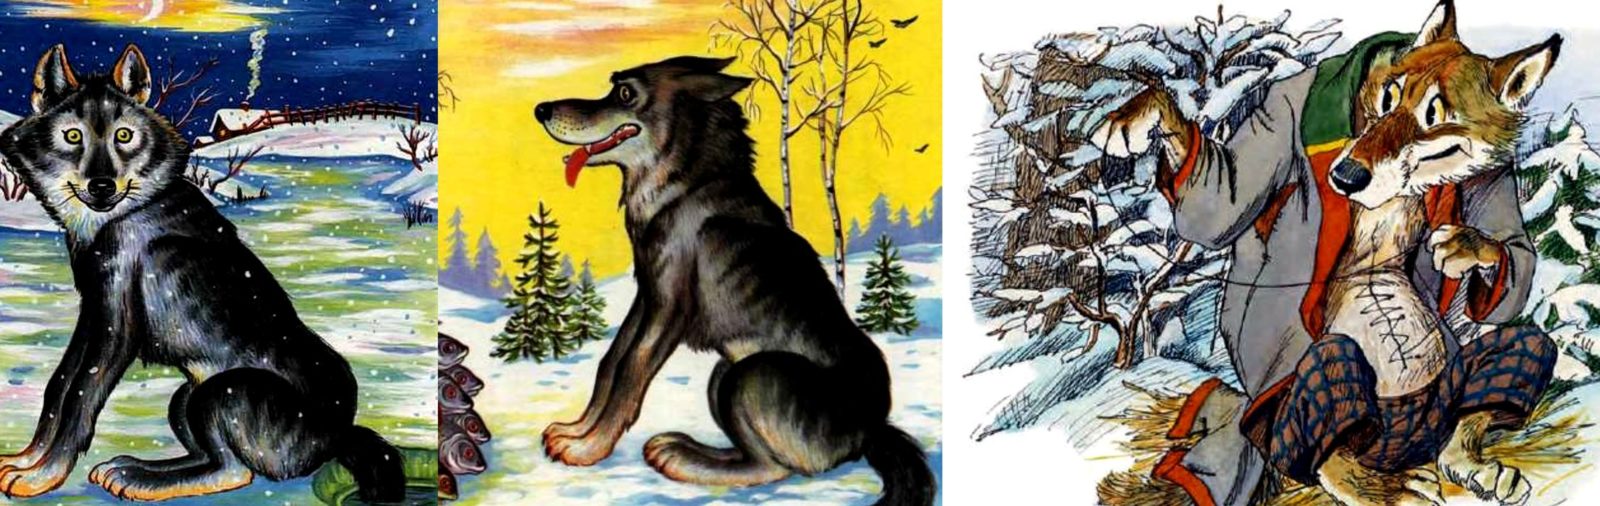 Волк и собака сказка на белорусском языке